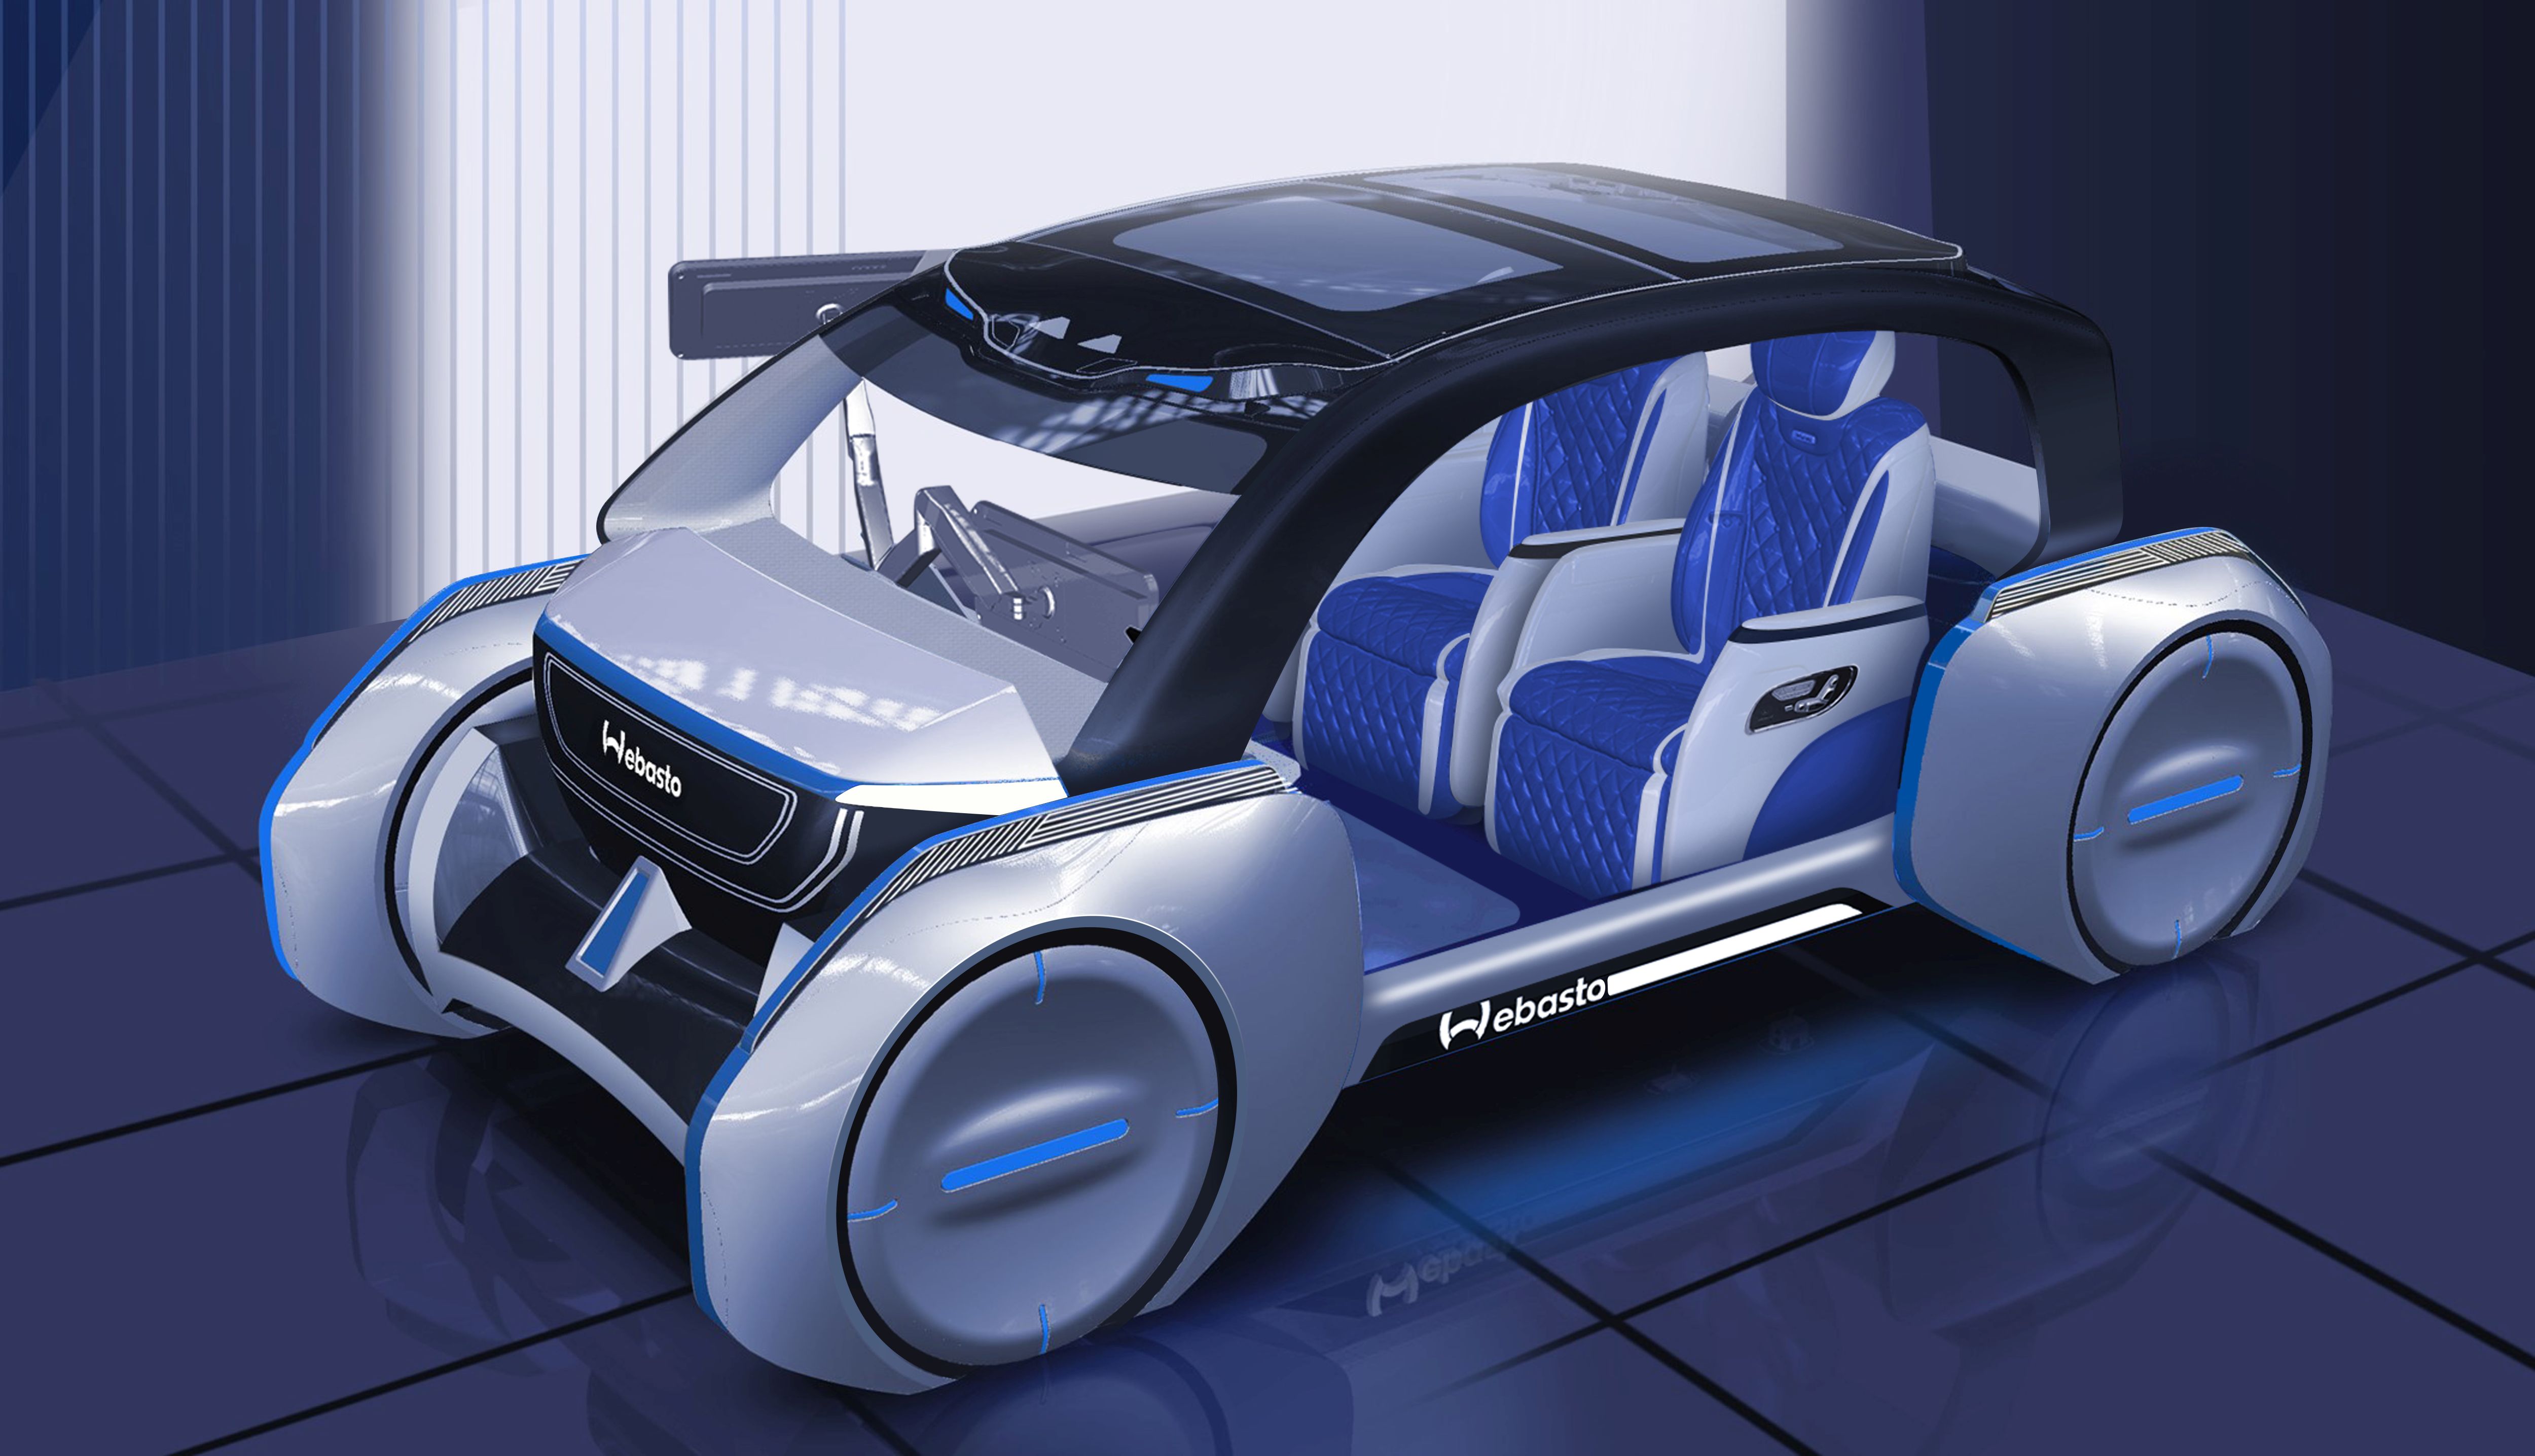 фото: Компания Webasto представила инновационные решения для мобильности будущего на Шанхайском международном автосалоне Auto Shanghai